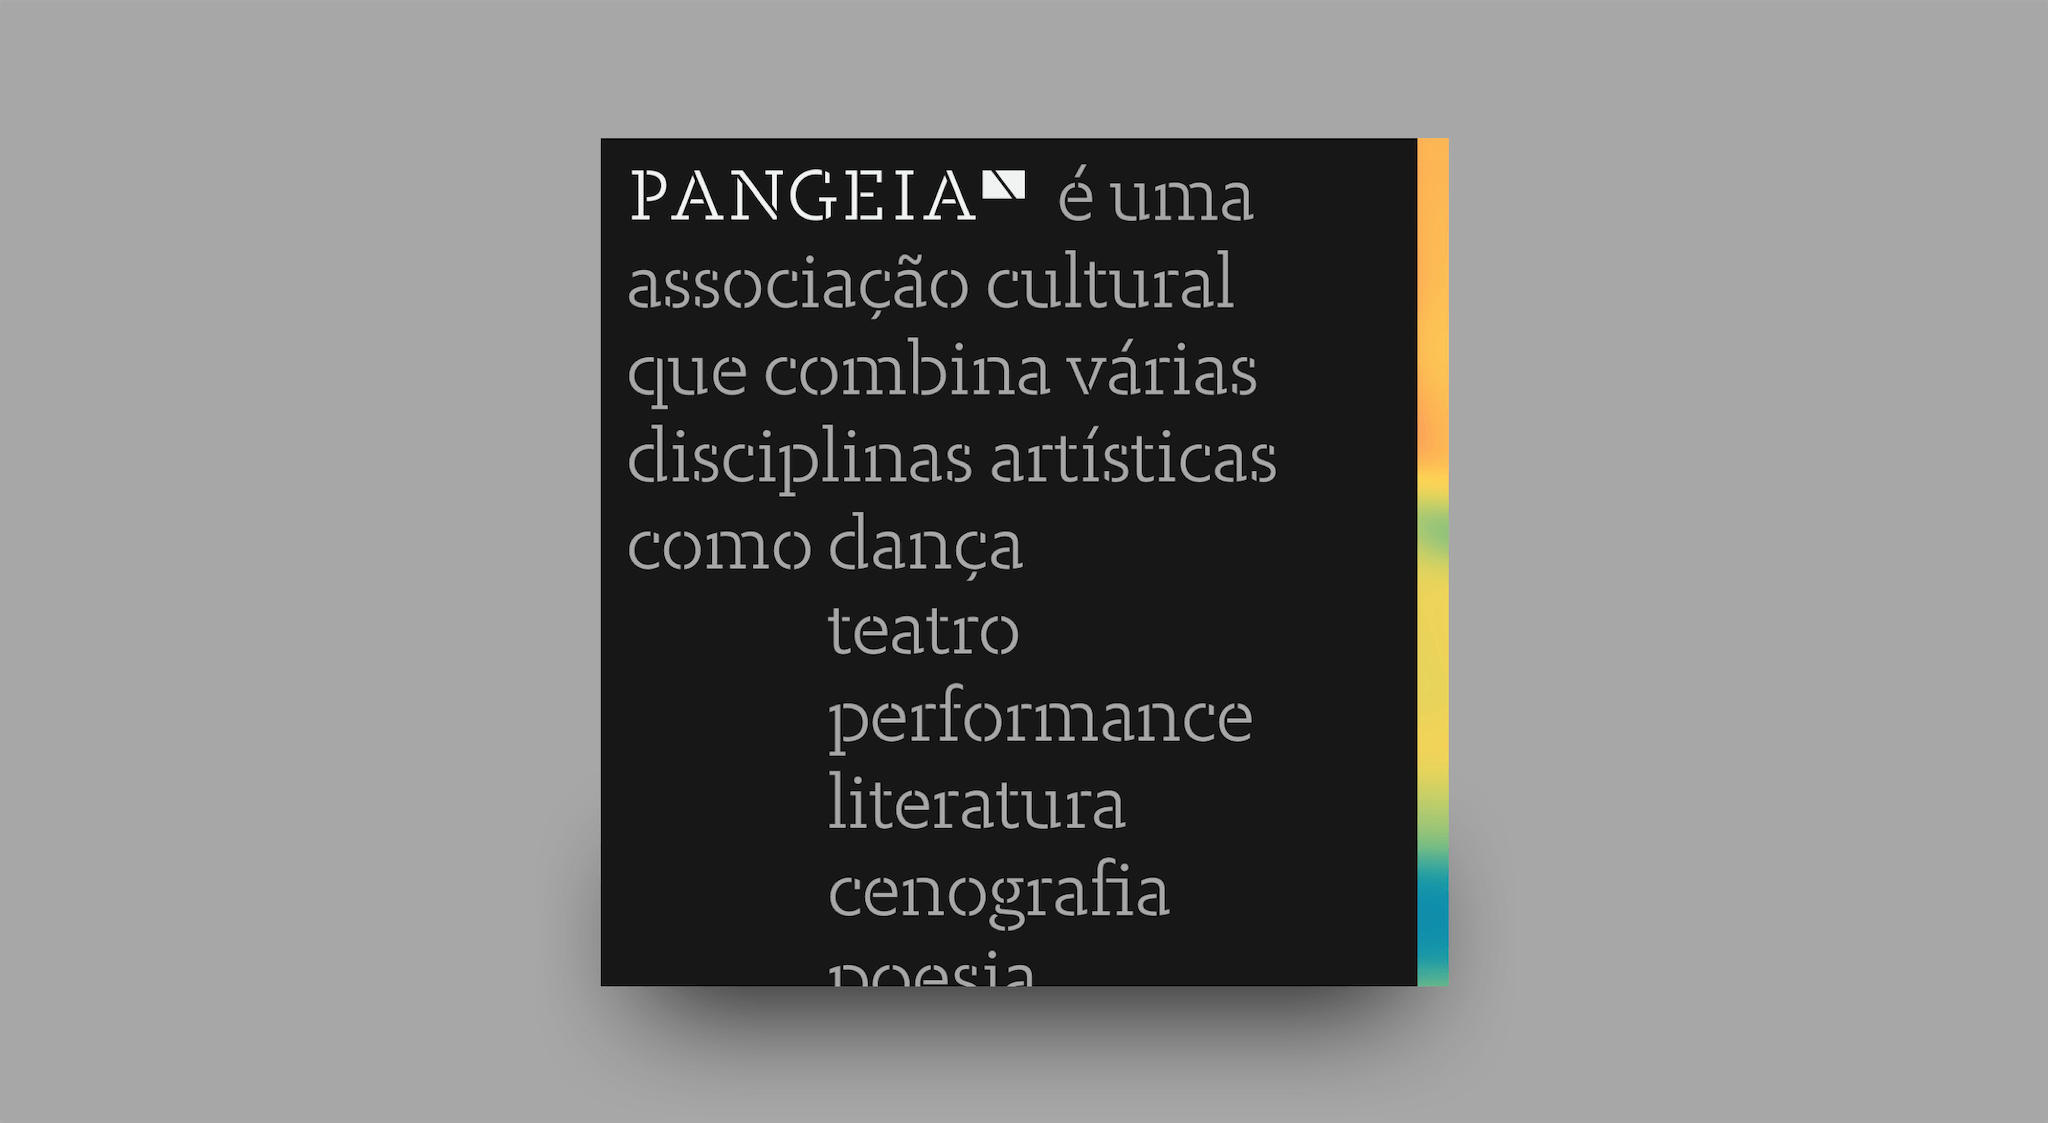 Imagem quadrada, para as redes sociais, onde se lê uma frase "PANGEIA" é uma associação cultural que combina várias disciplinas artísticas como dança, teatro, performance, literatura, cenografia, e poesia.